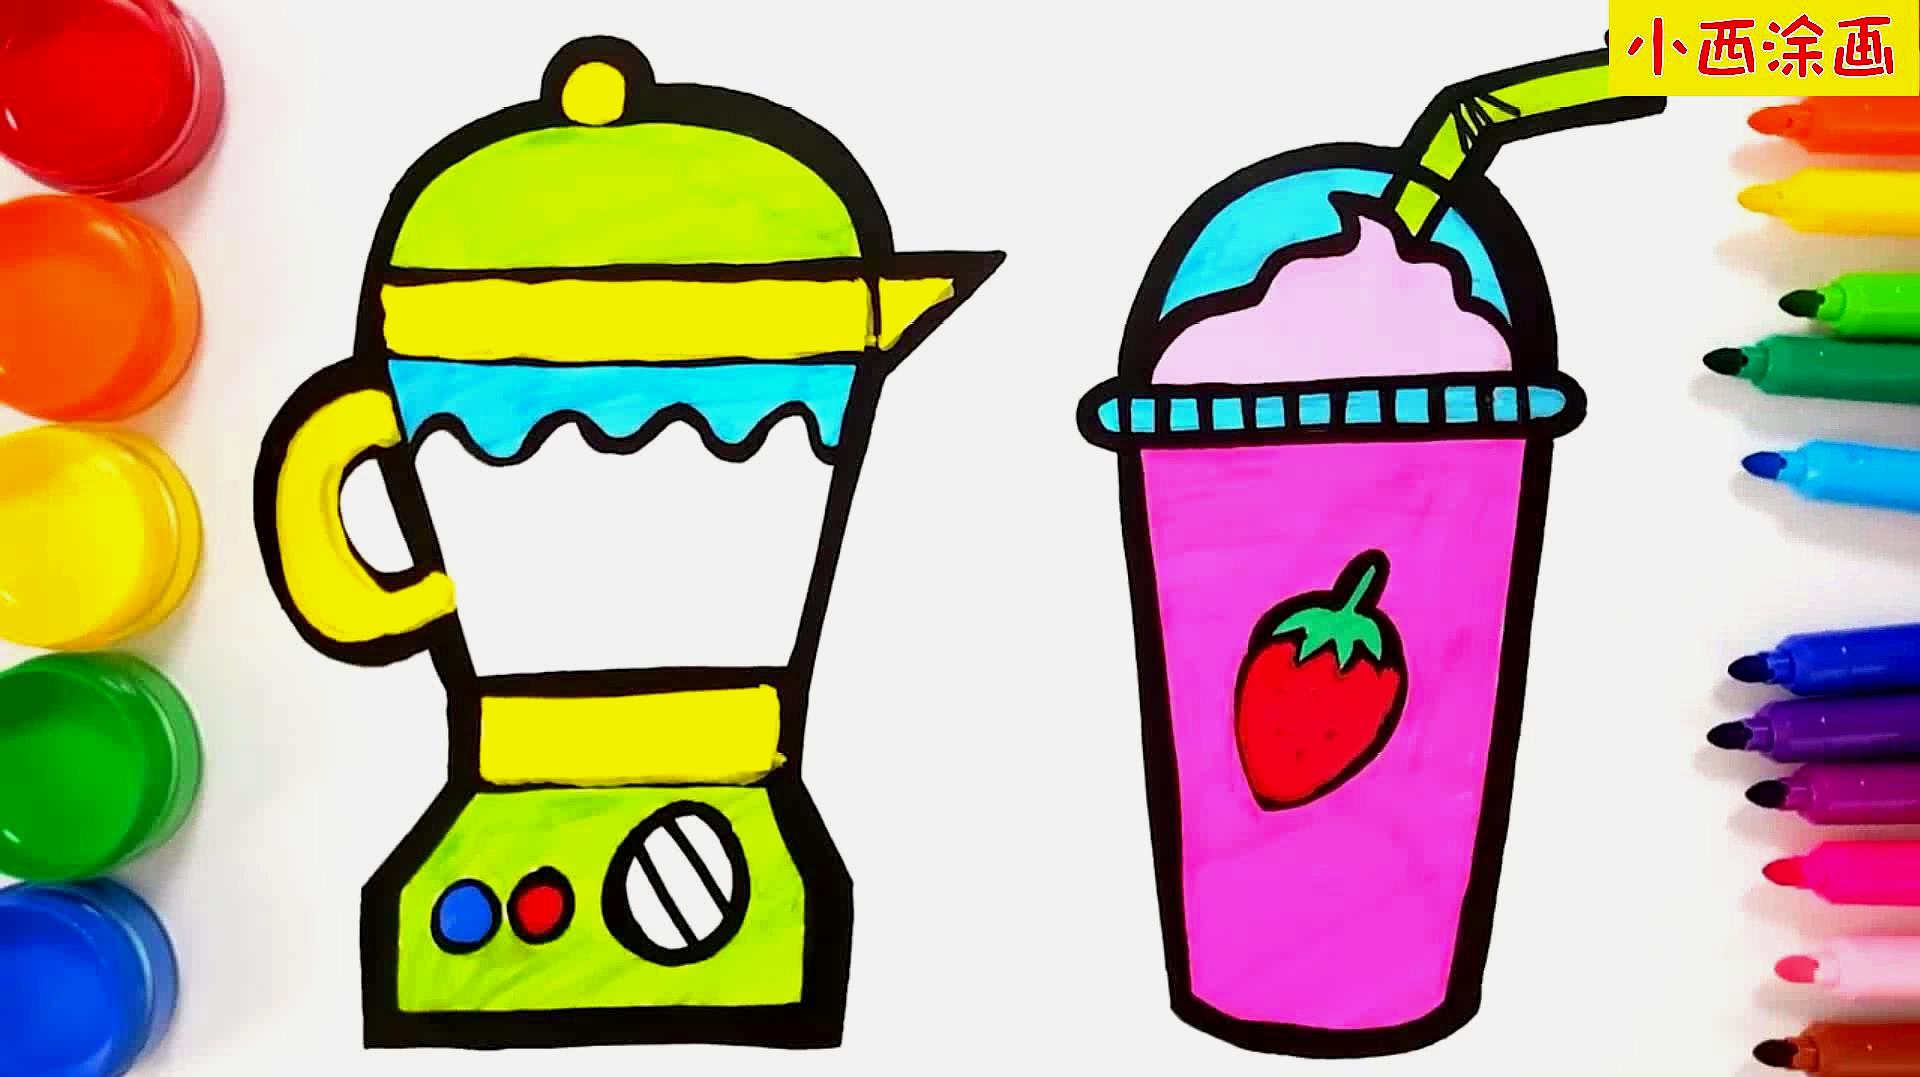 亲子趣味创意简笔画,用榨汁机榨鲜草莓汁,色彩早教视频送给你